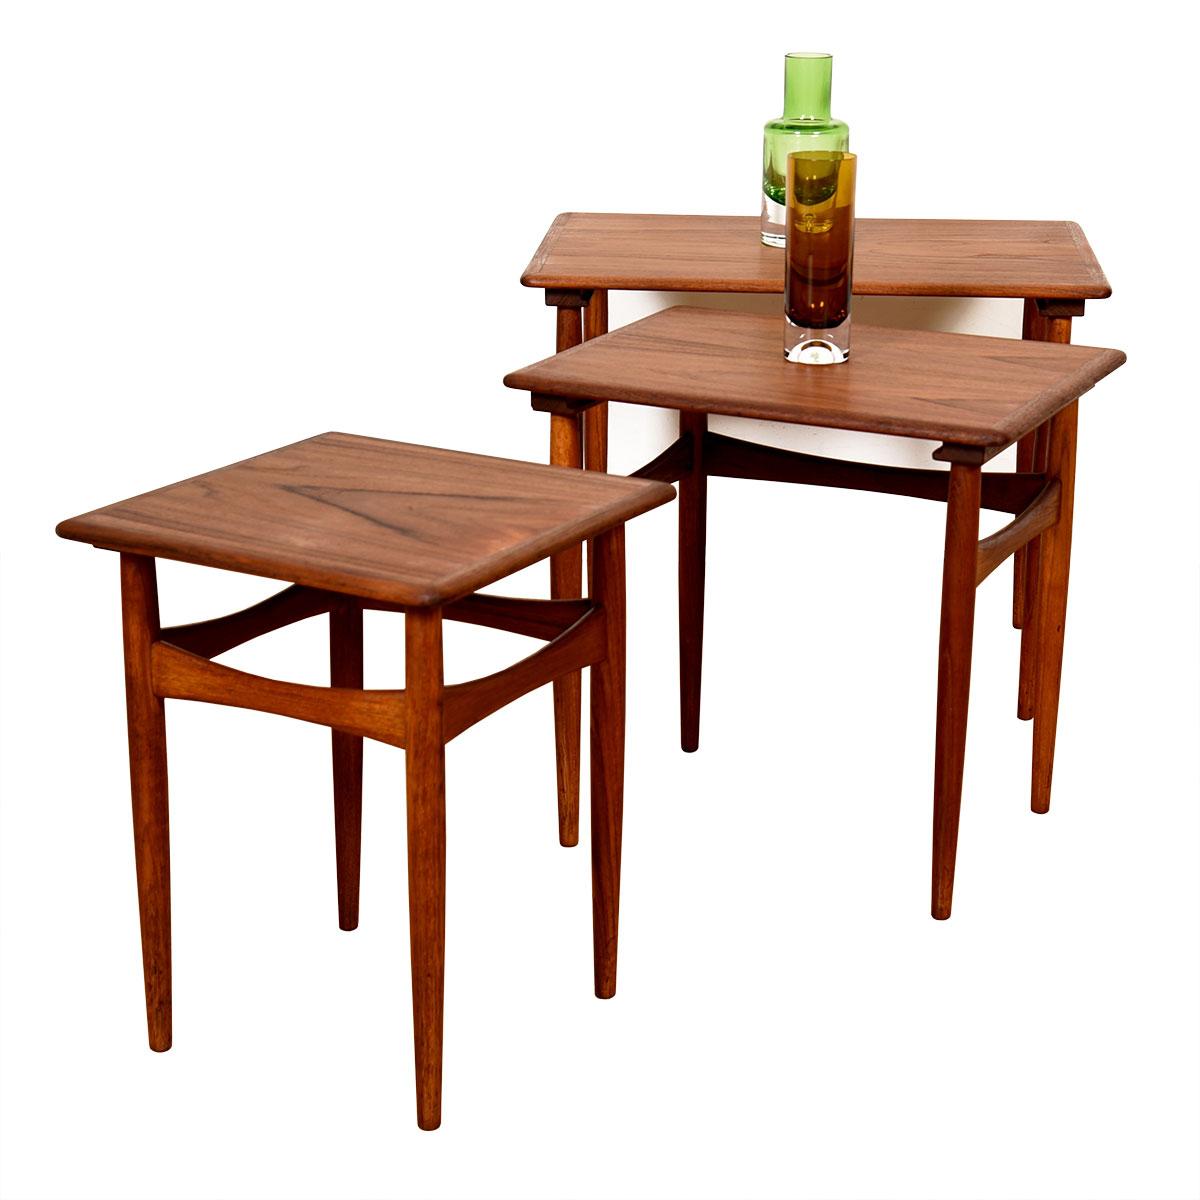 Set of 3 Danish Modern Hans J. Wegner ‘AT 40’ Nesting Tables, circa 1960s For Sale 2